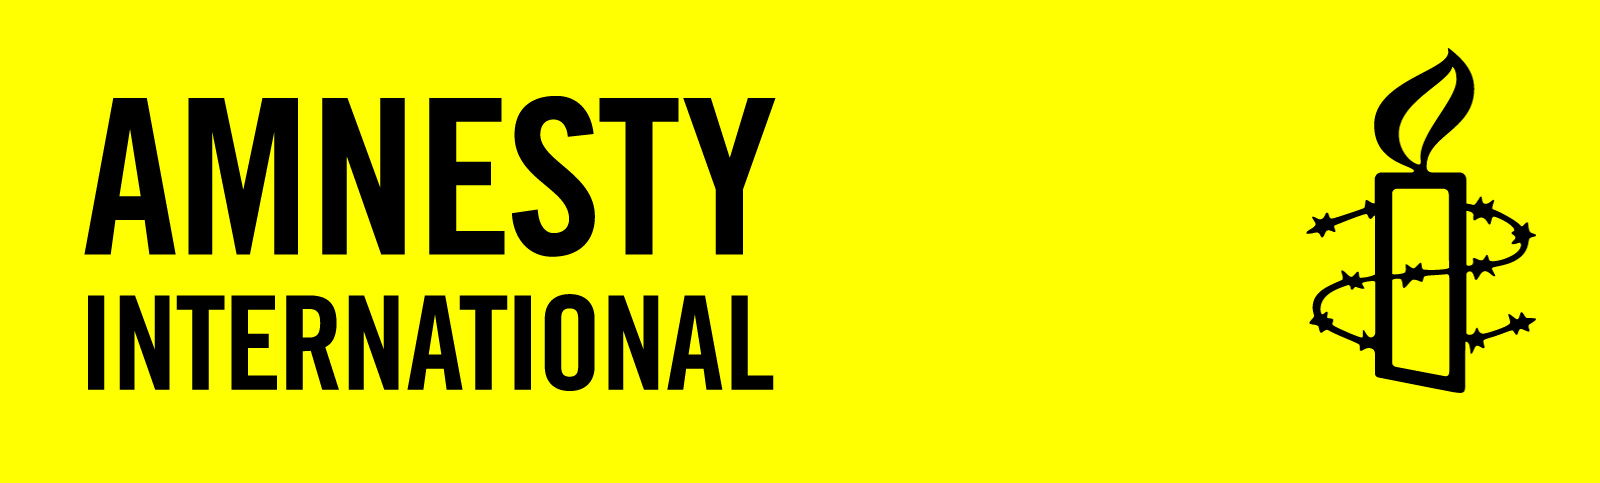 amnesty-international-logo.jpg